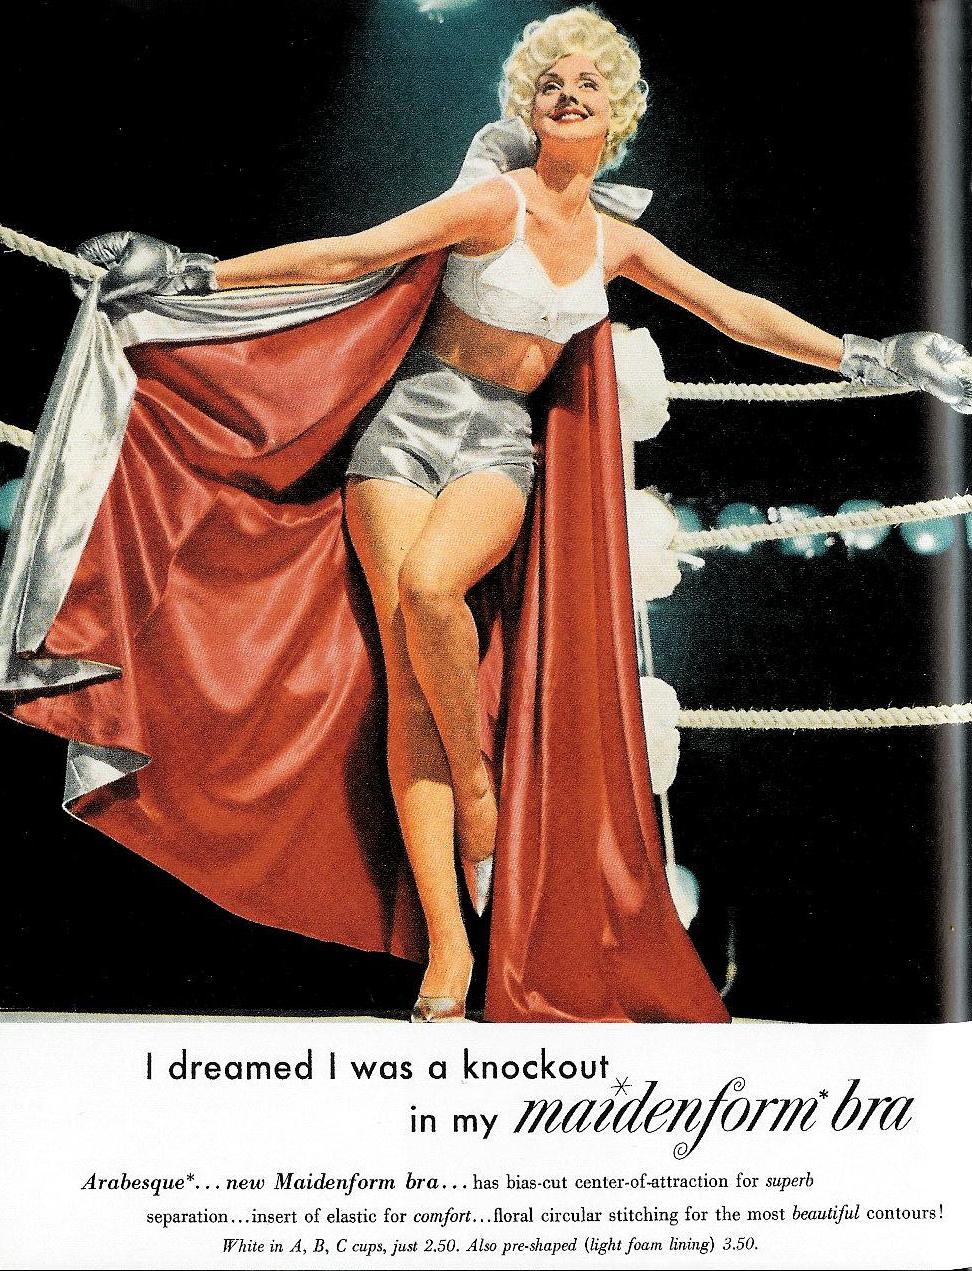 1968 Maidenform Bra When I dream, I dream Photo Original Print Ad ~